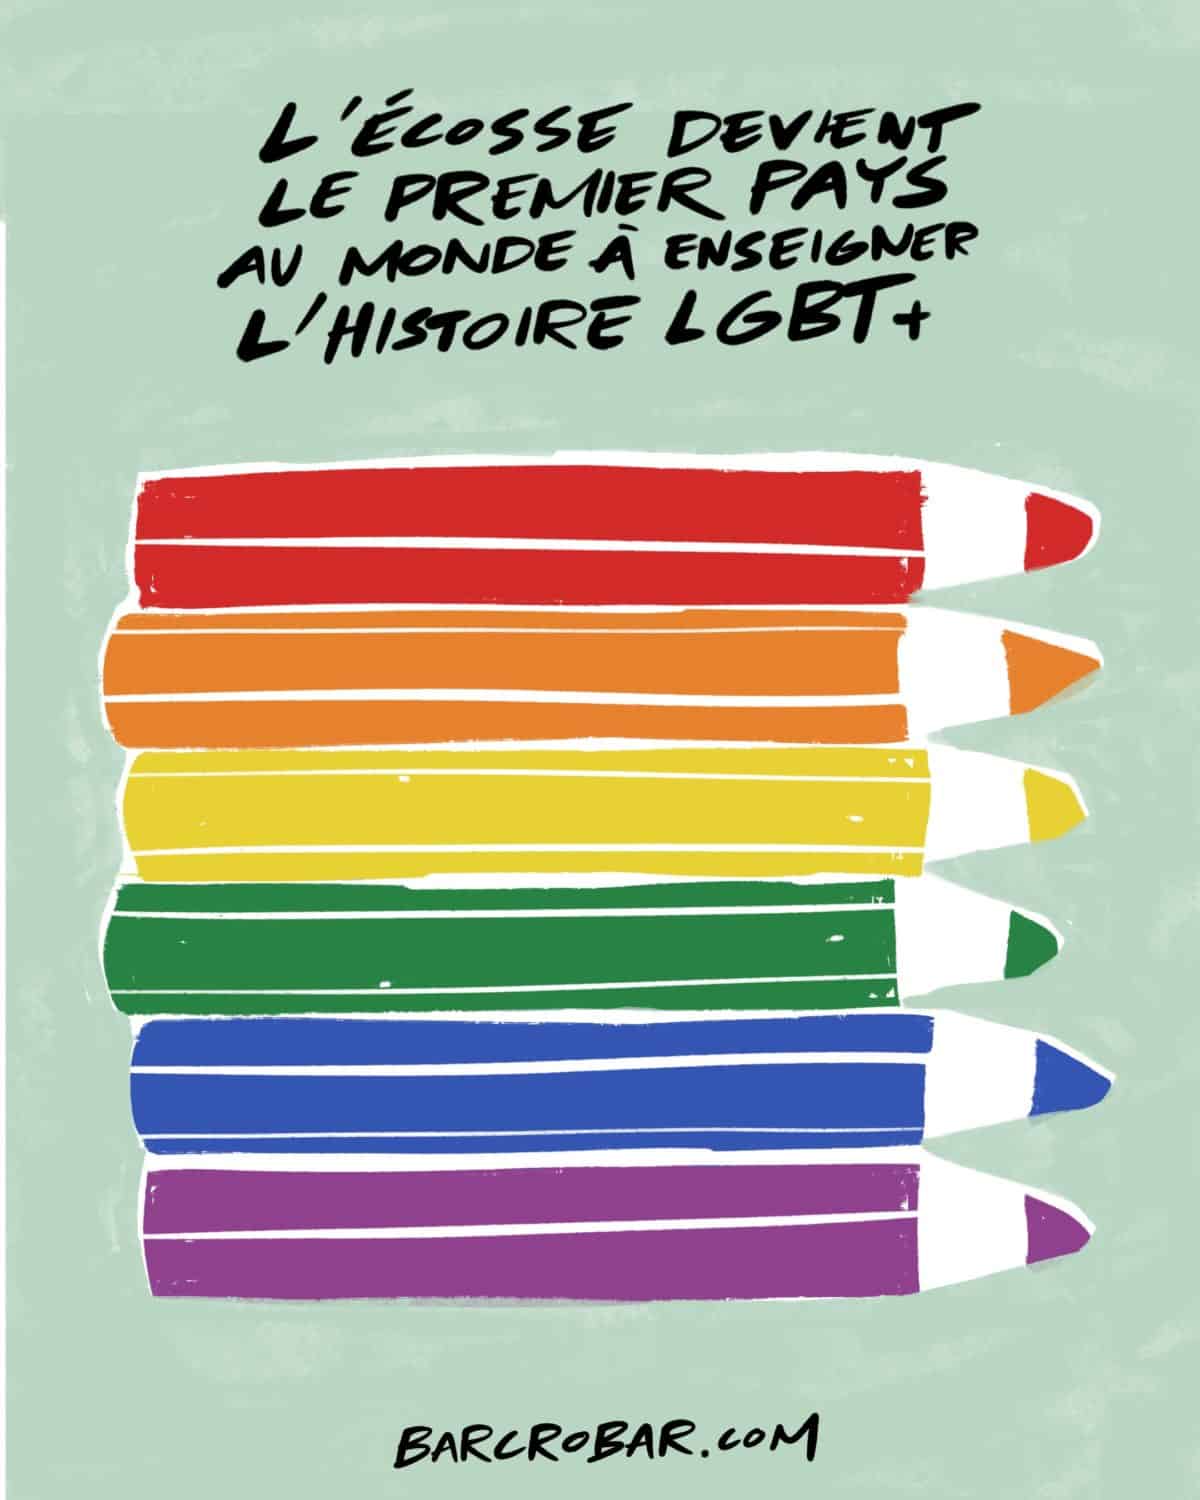 L’Ecosse devient le premier pays au monde à enseigner l’Histoire LGBT+